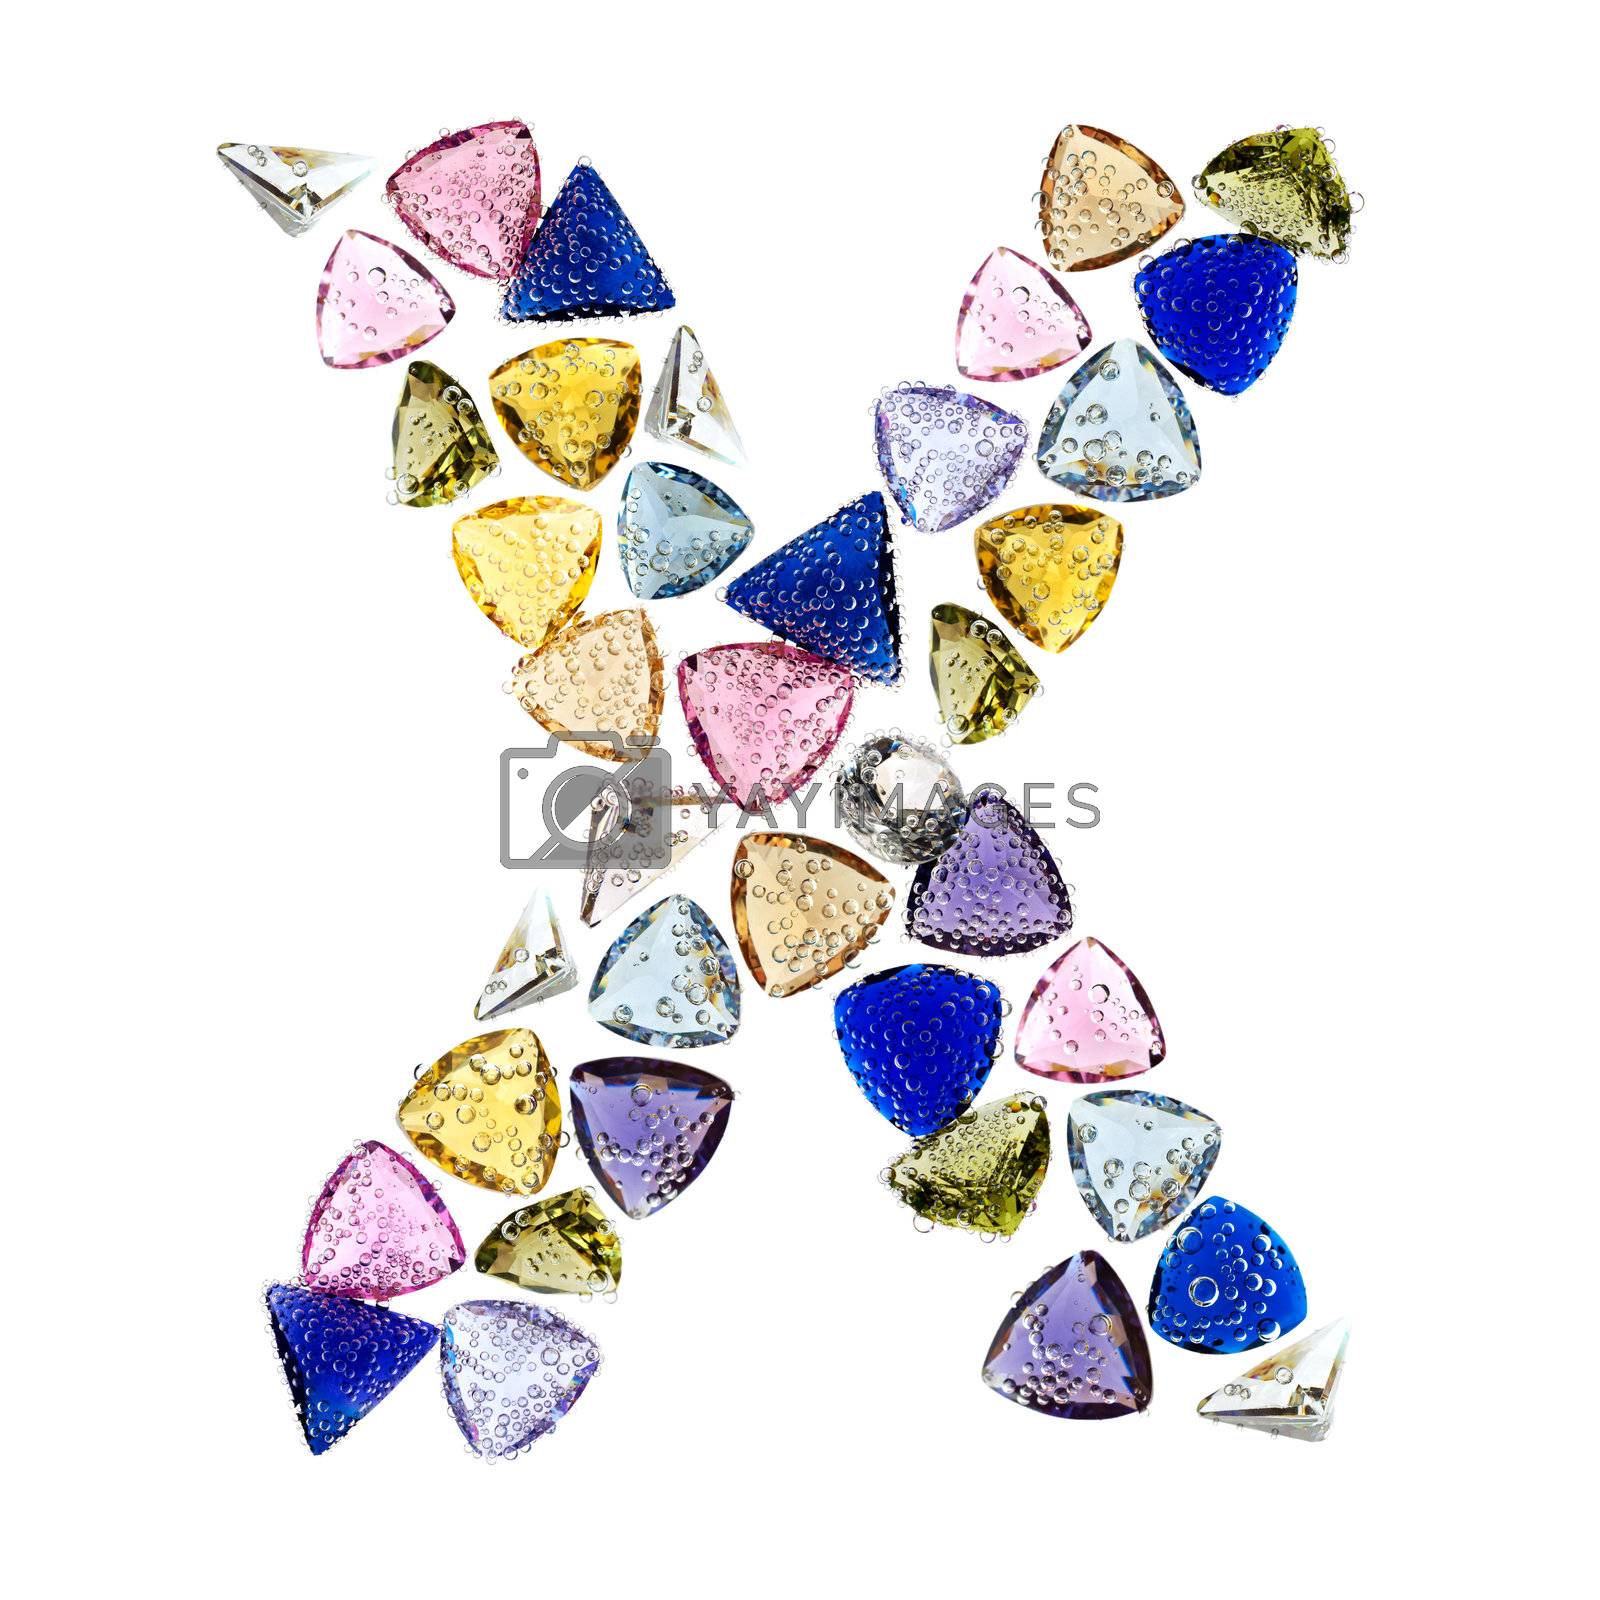 Royalty free image of Gemstones alphabet, letter X. Isolated on white background. by pashabo